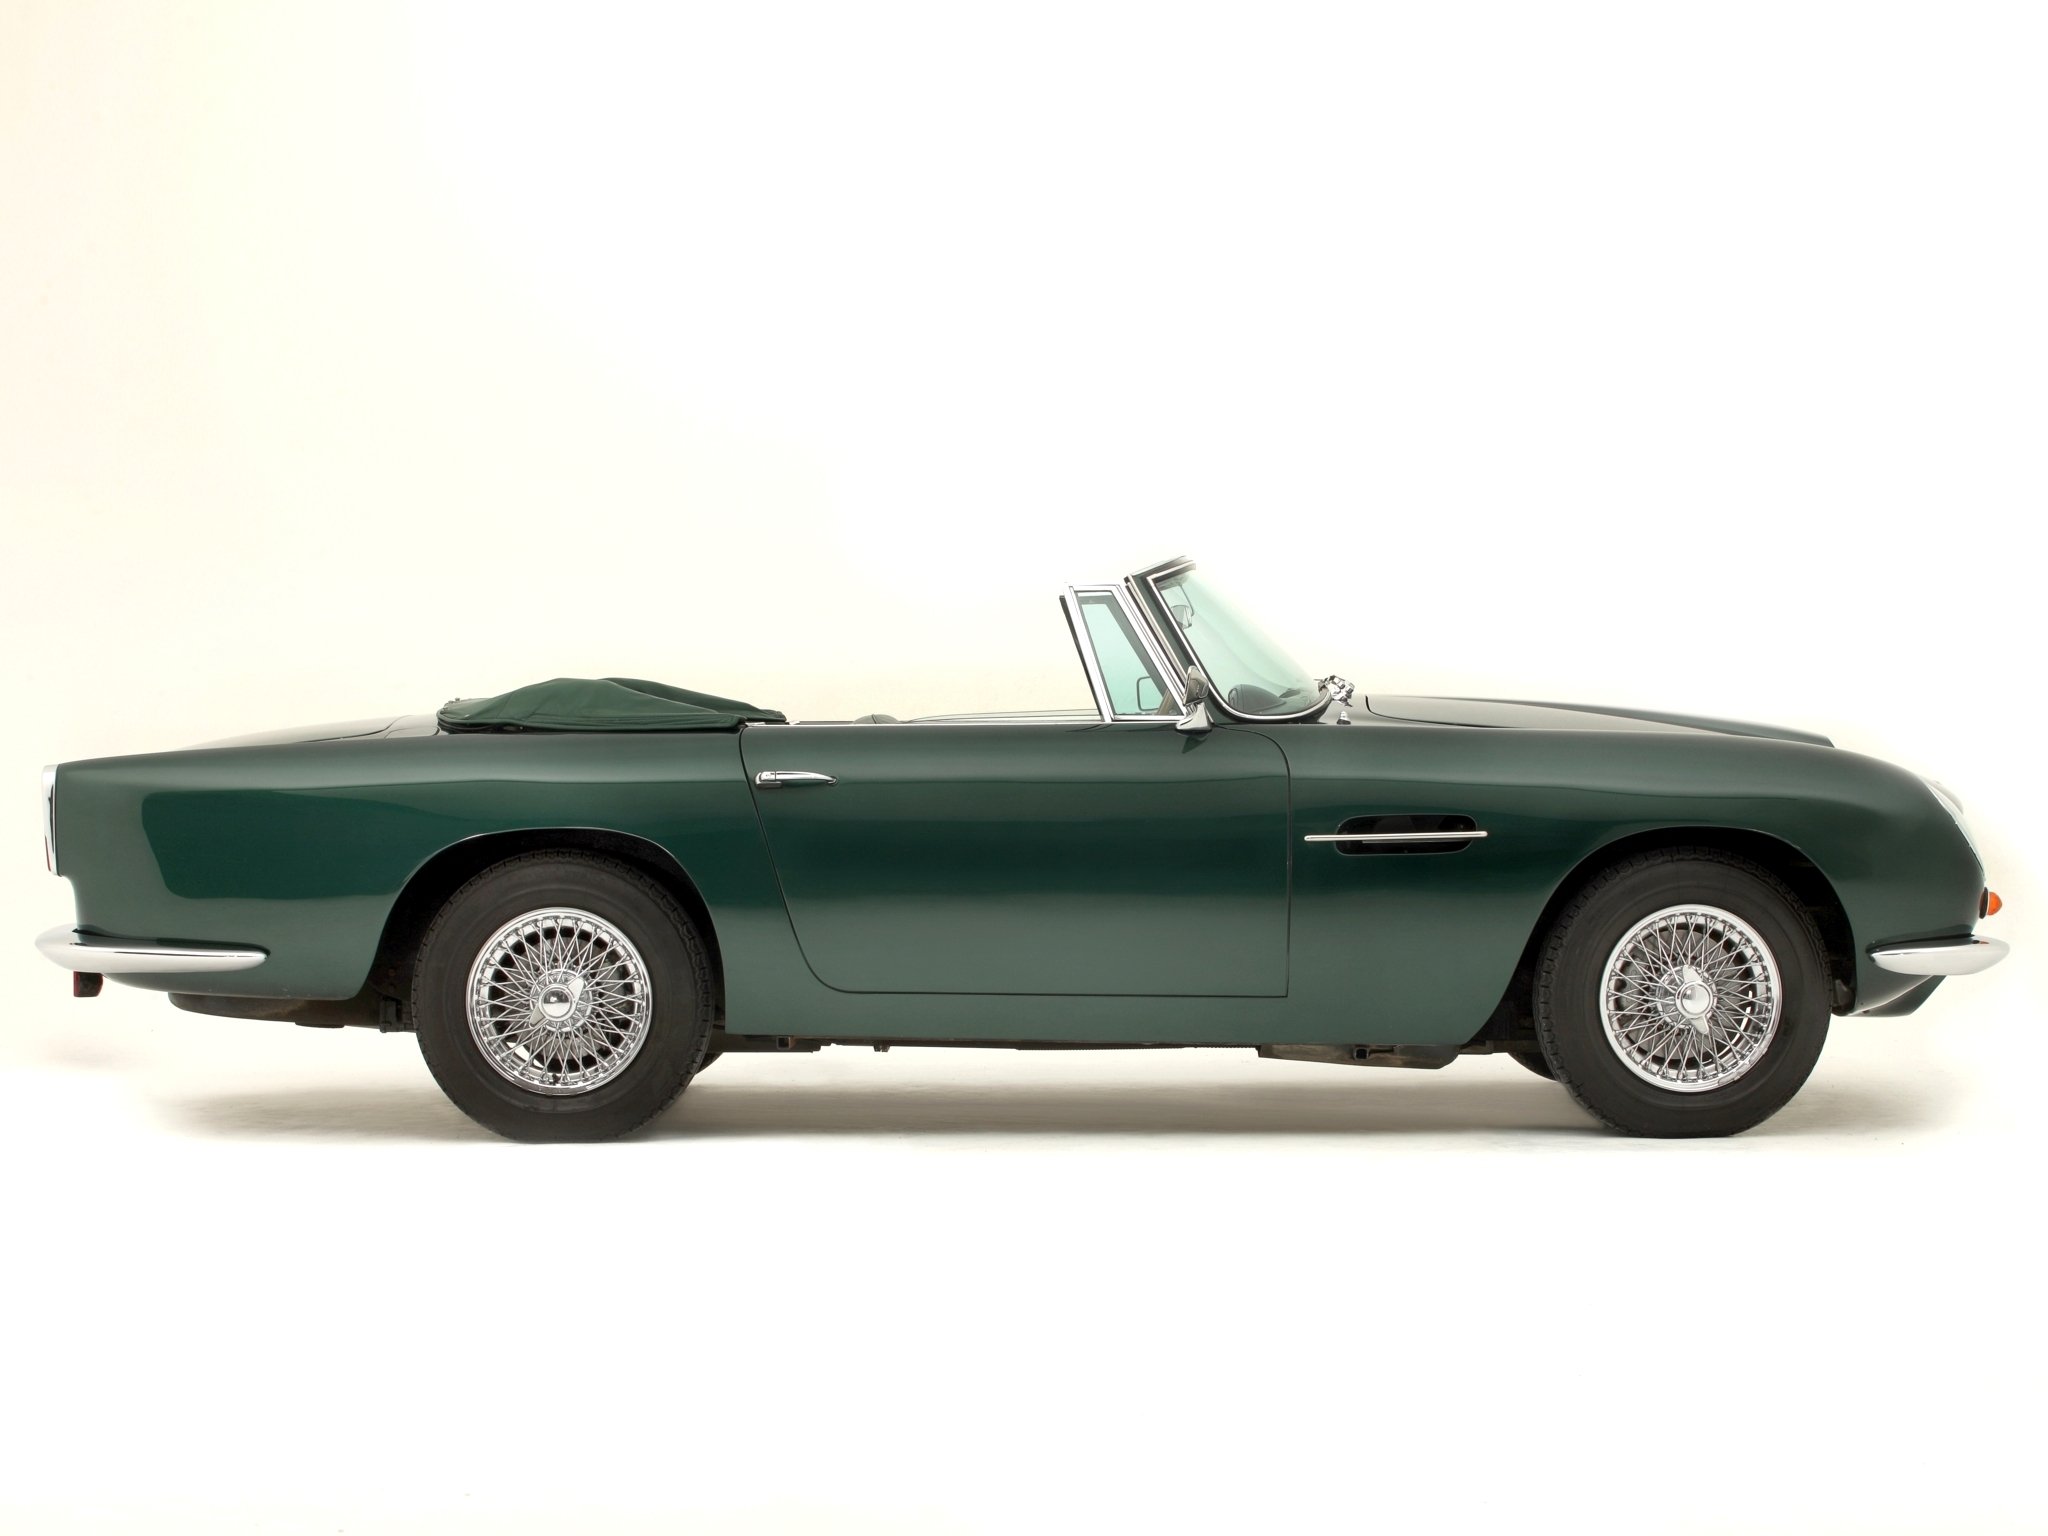 1965 69, Aston, Martin, Db6, Volante, Uk spec, Classic Wallpaper